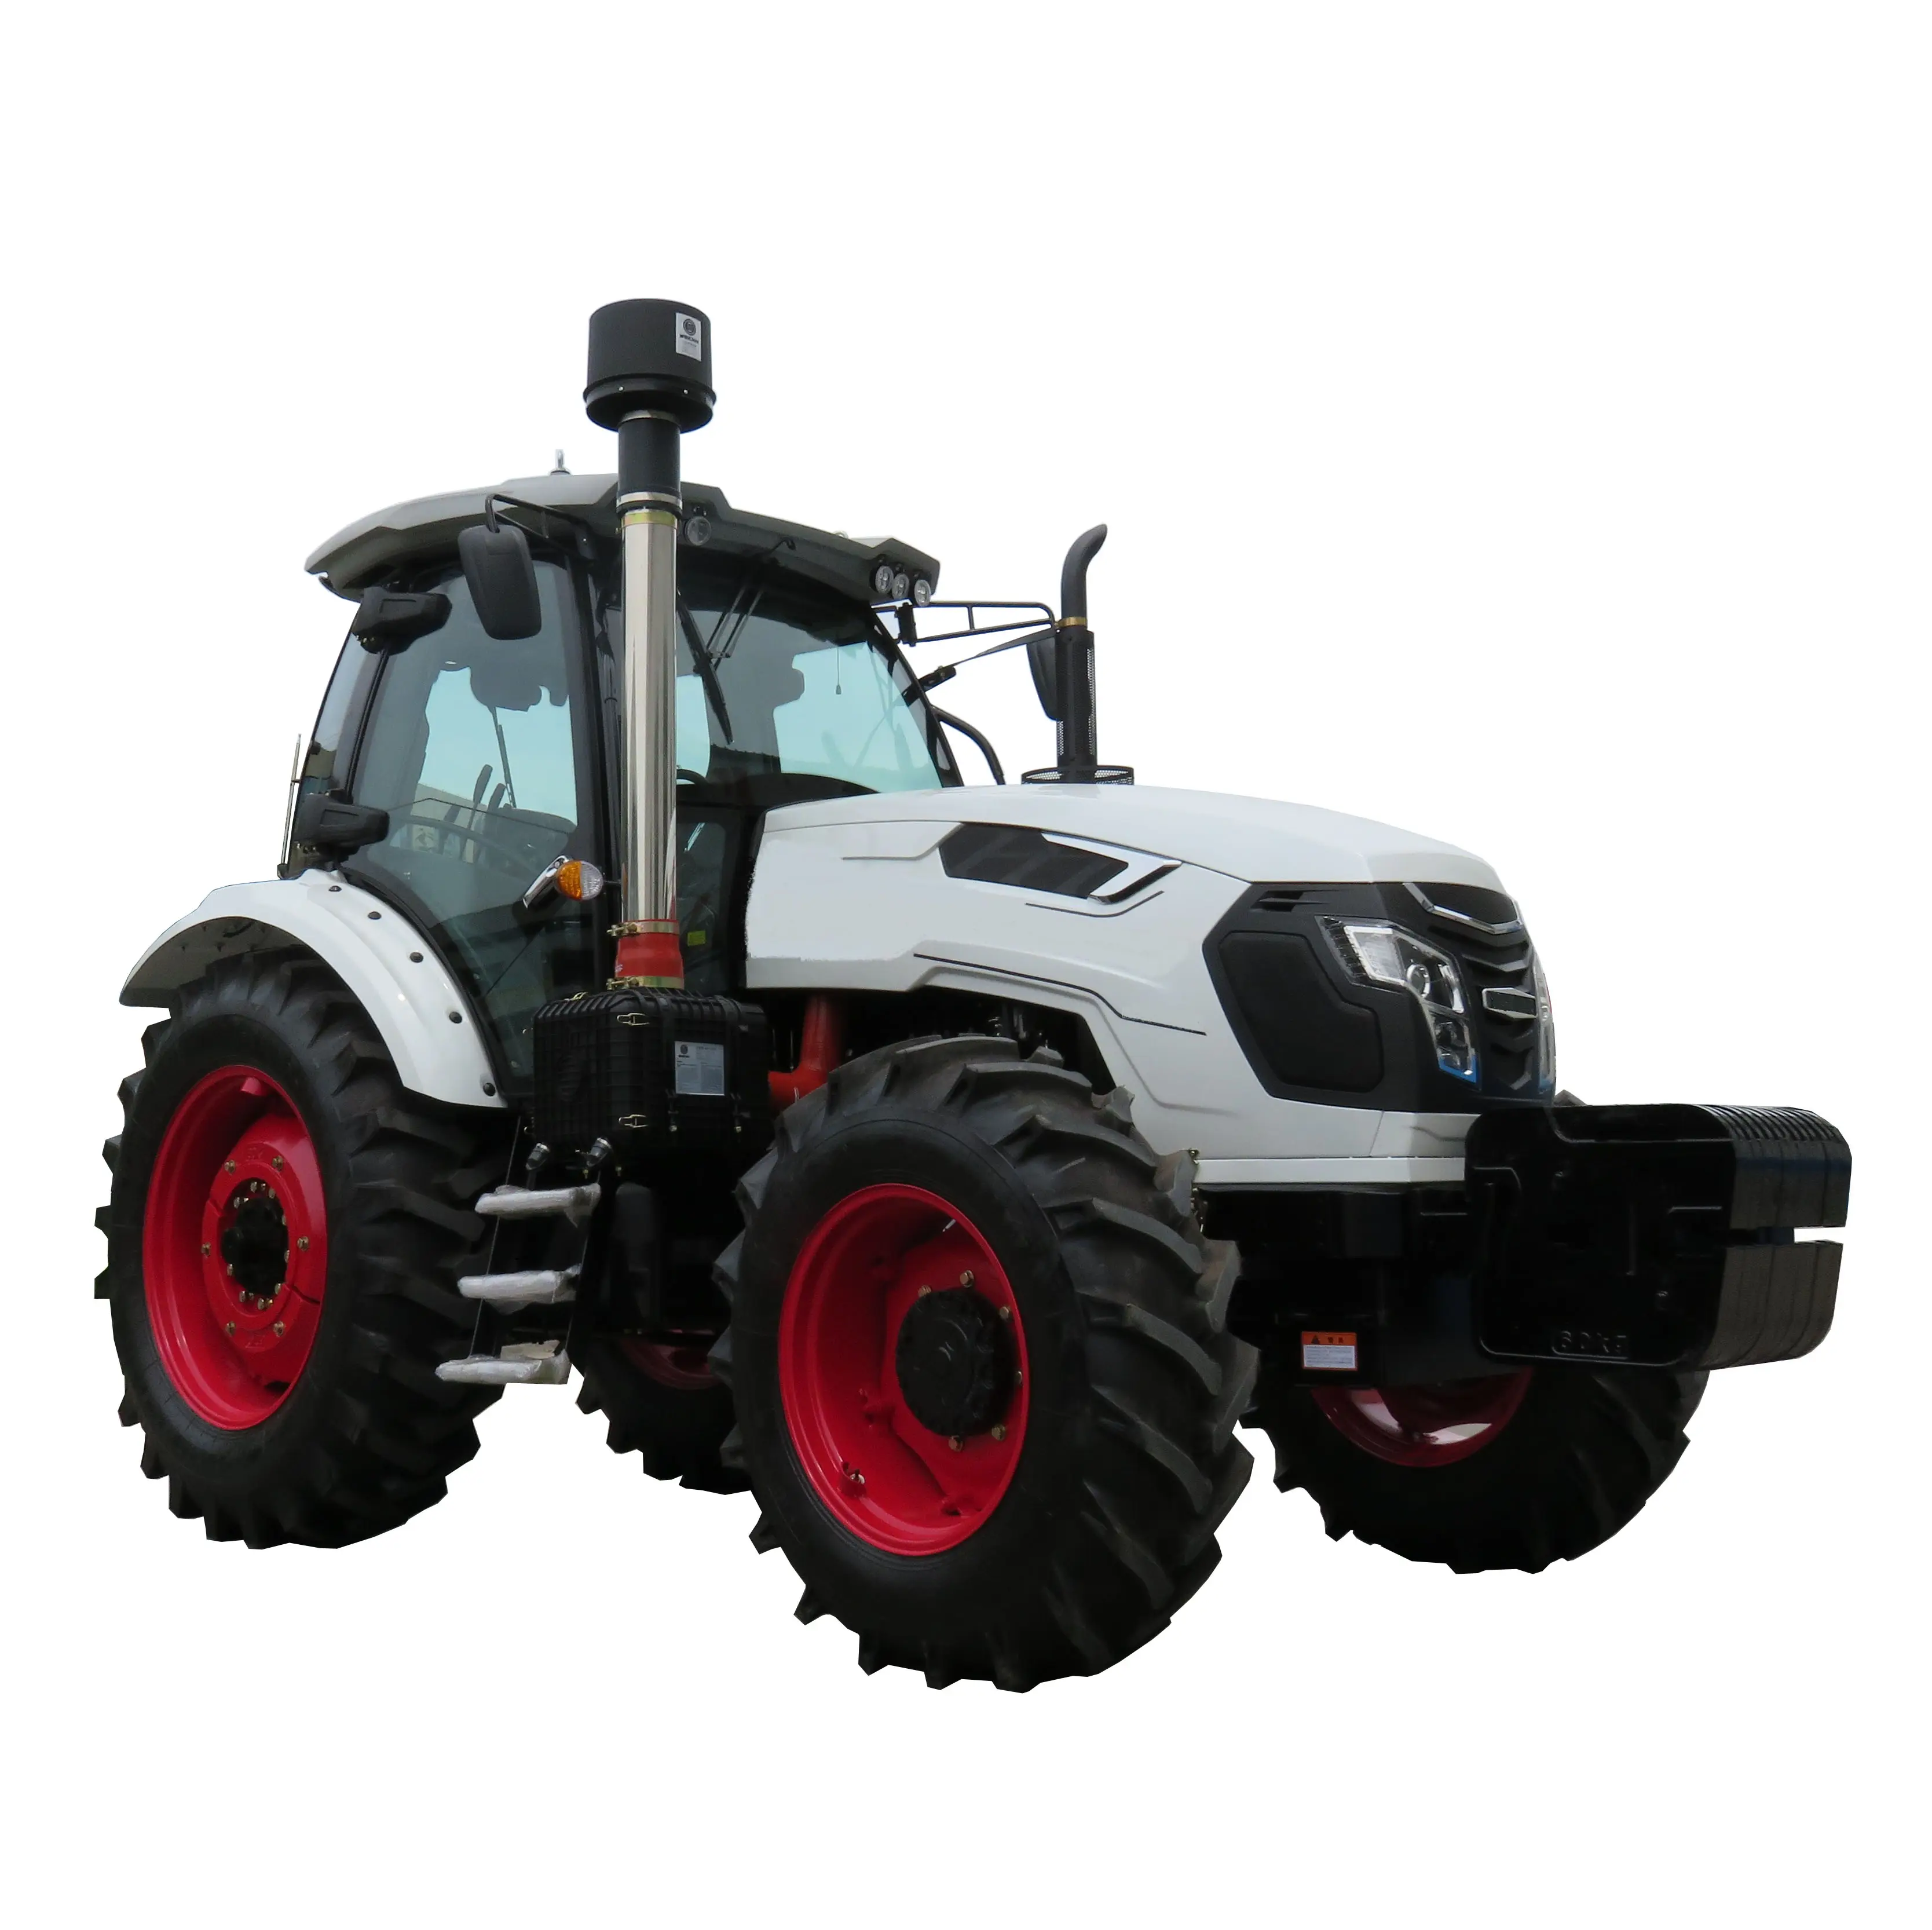 Крупные сельскохозяйственные тракторы Winner brand для сельского хозяйства, б/у тракторы 4*4, китайские тракторы 160 л.с., цена